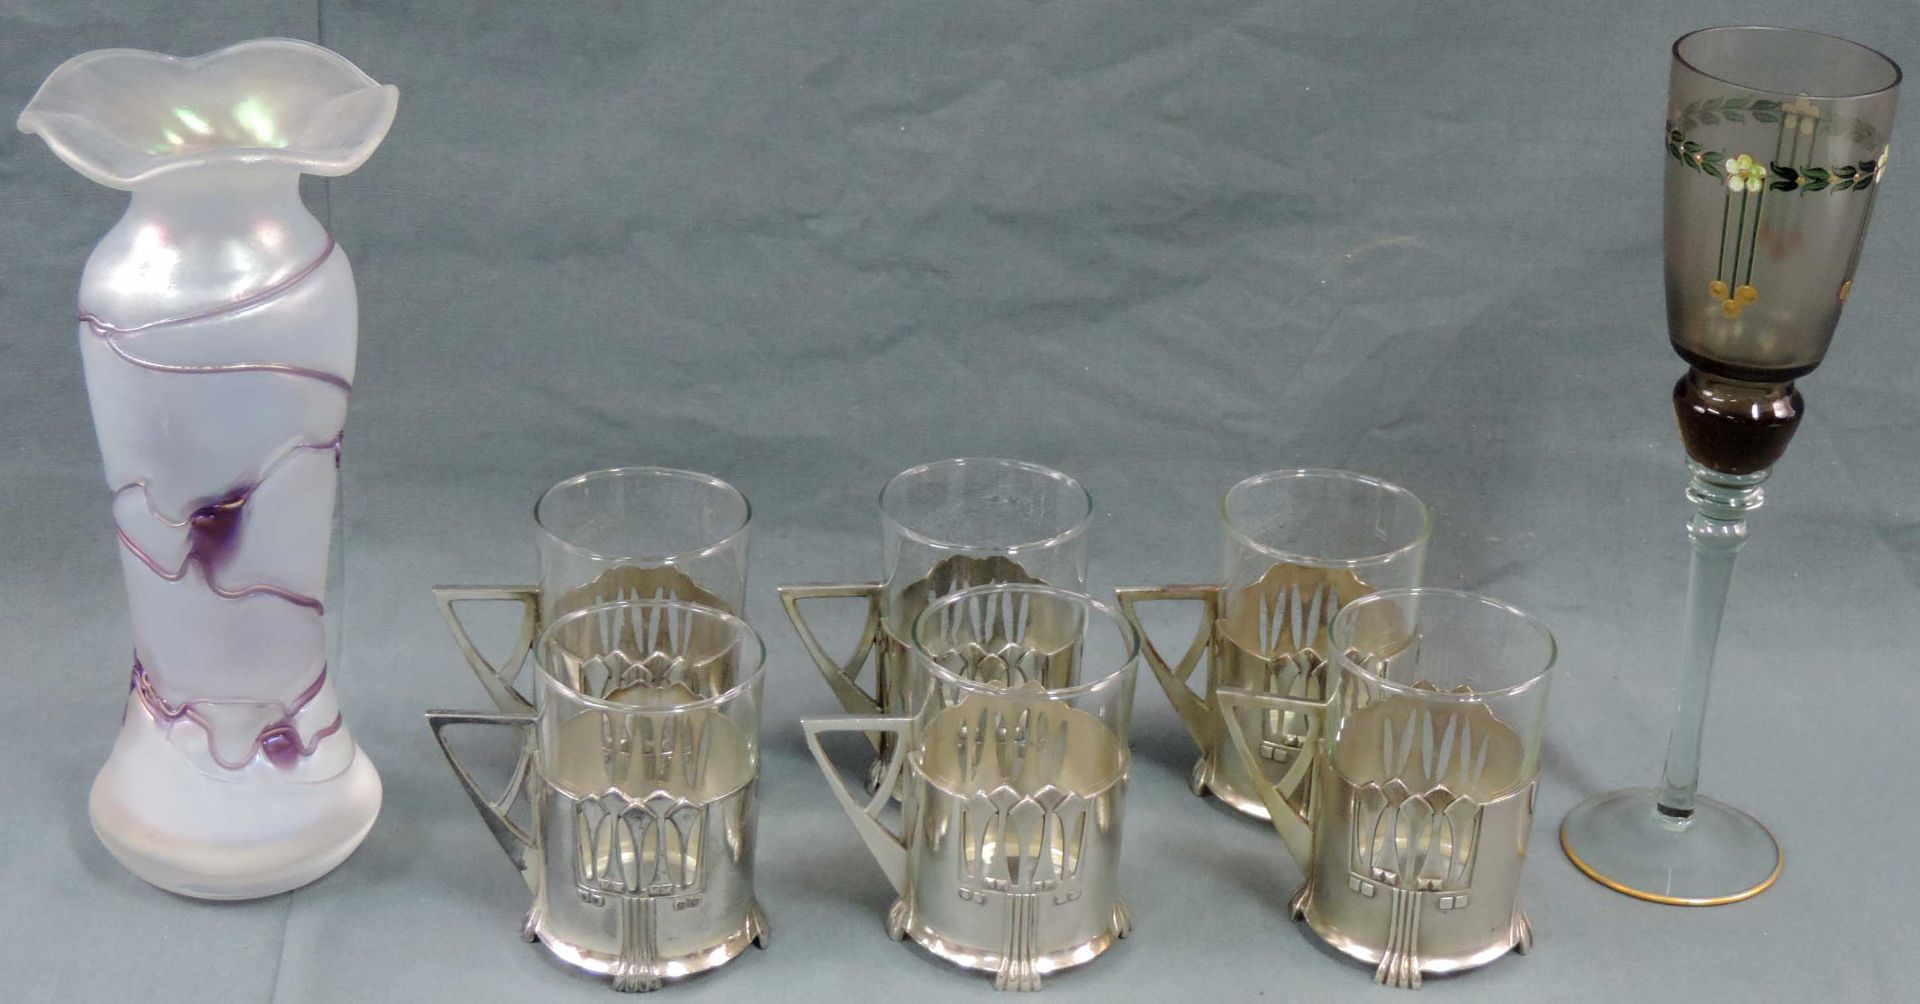 6 Jugendstil Teegläser sowie ein Kelch und eine Vase aus Glas.6 Teegläser mit versilberten WMF